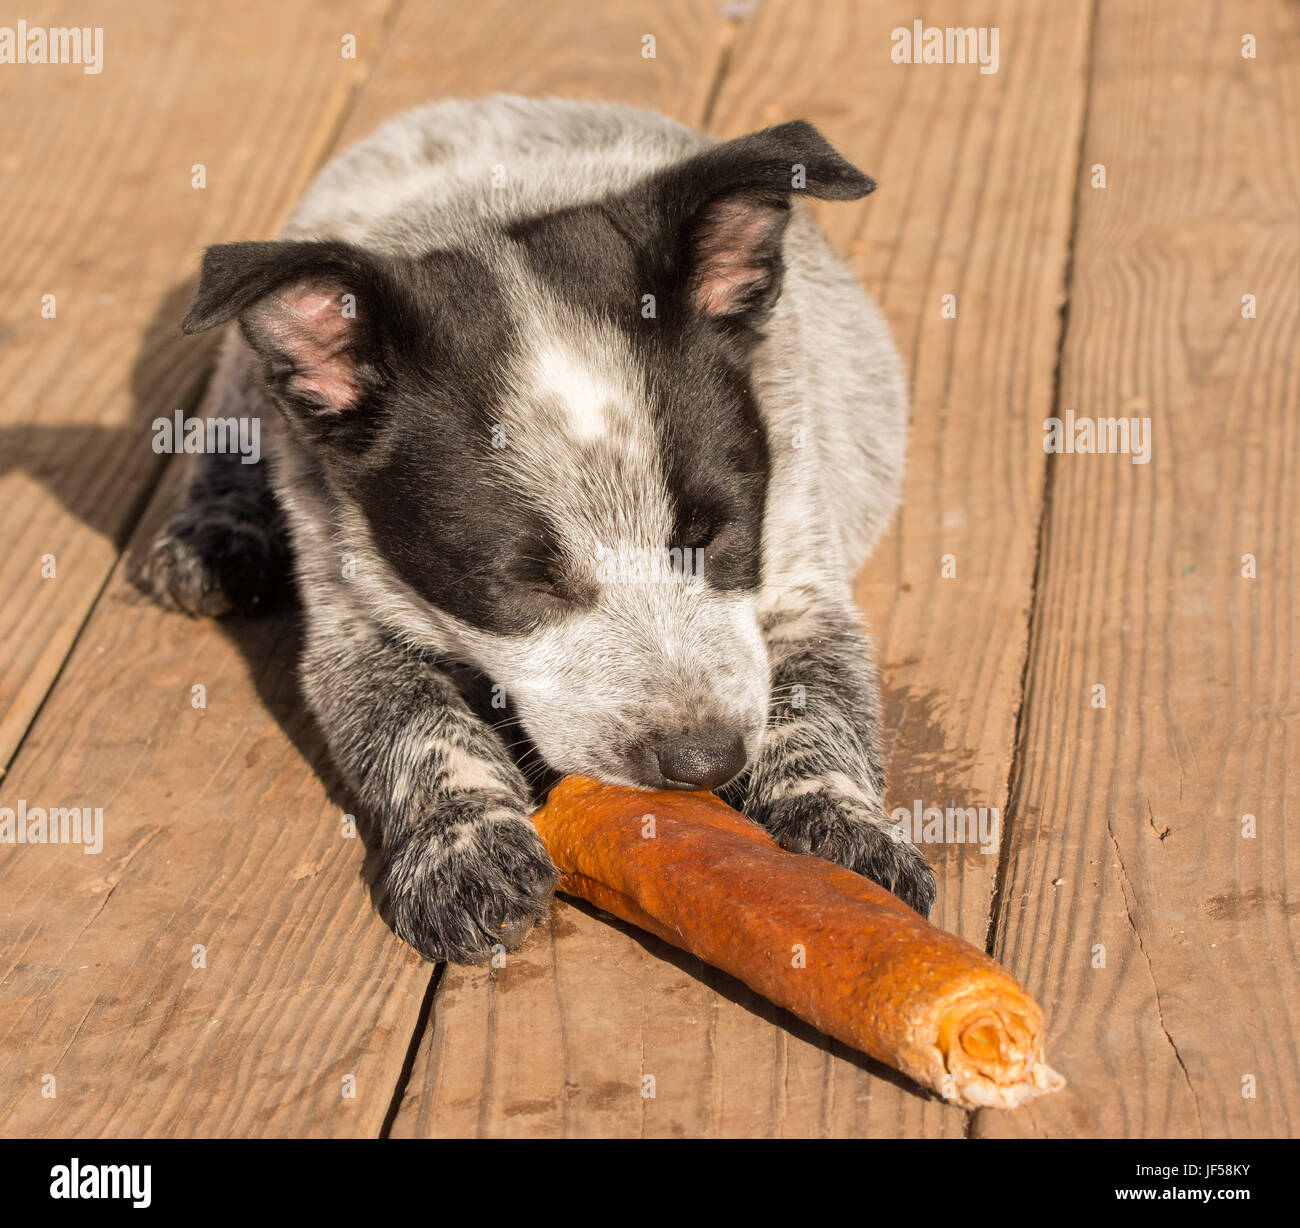 Texas Heeler cucciolo masticare su un bastone in cuoio pergamentato Foto Stock